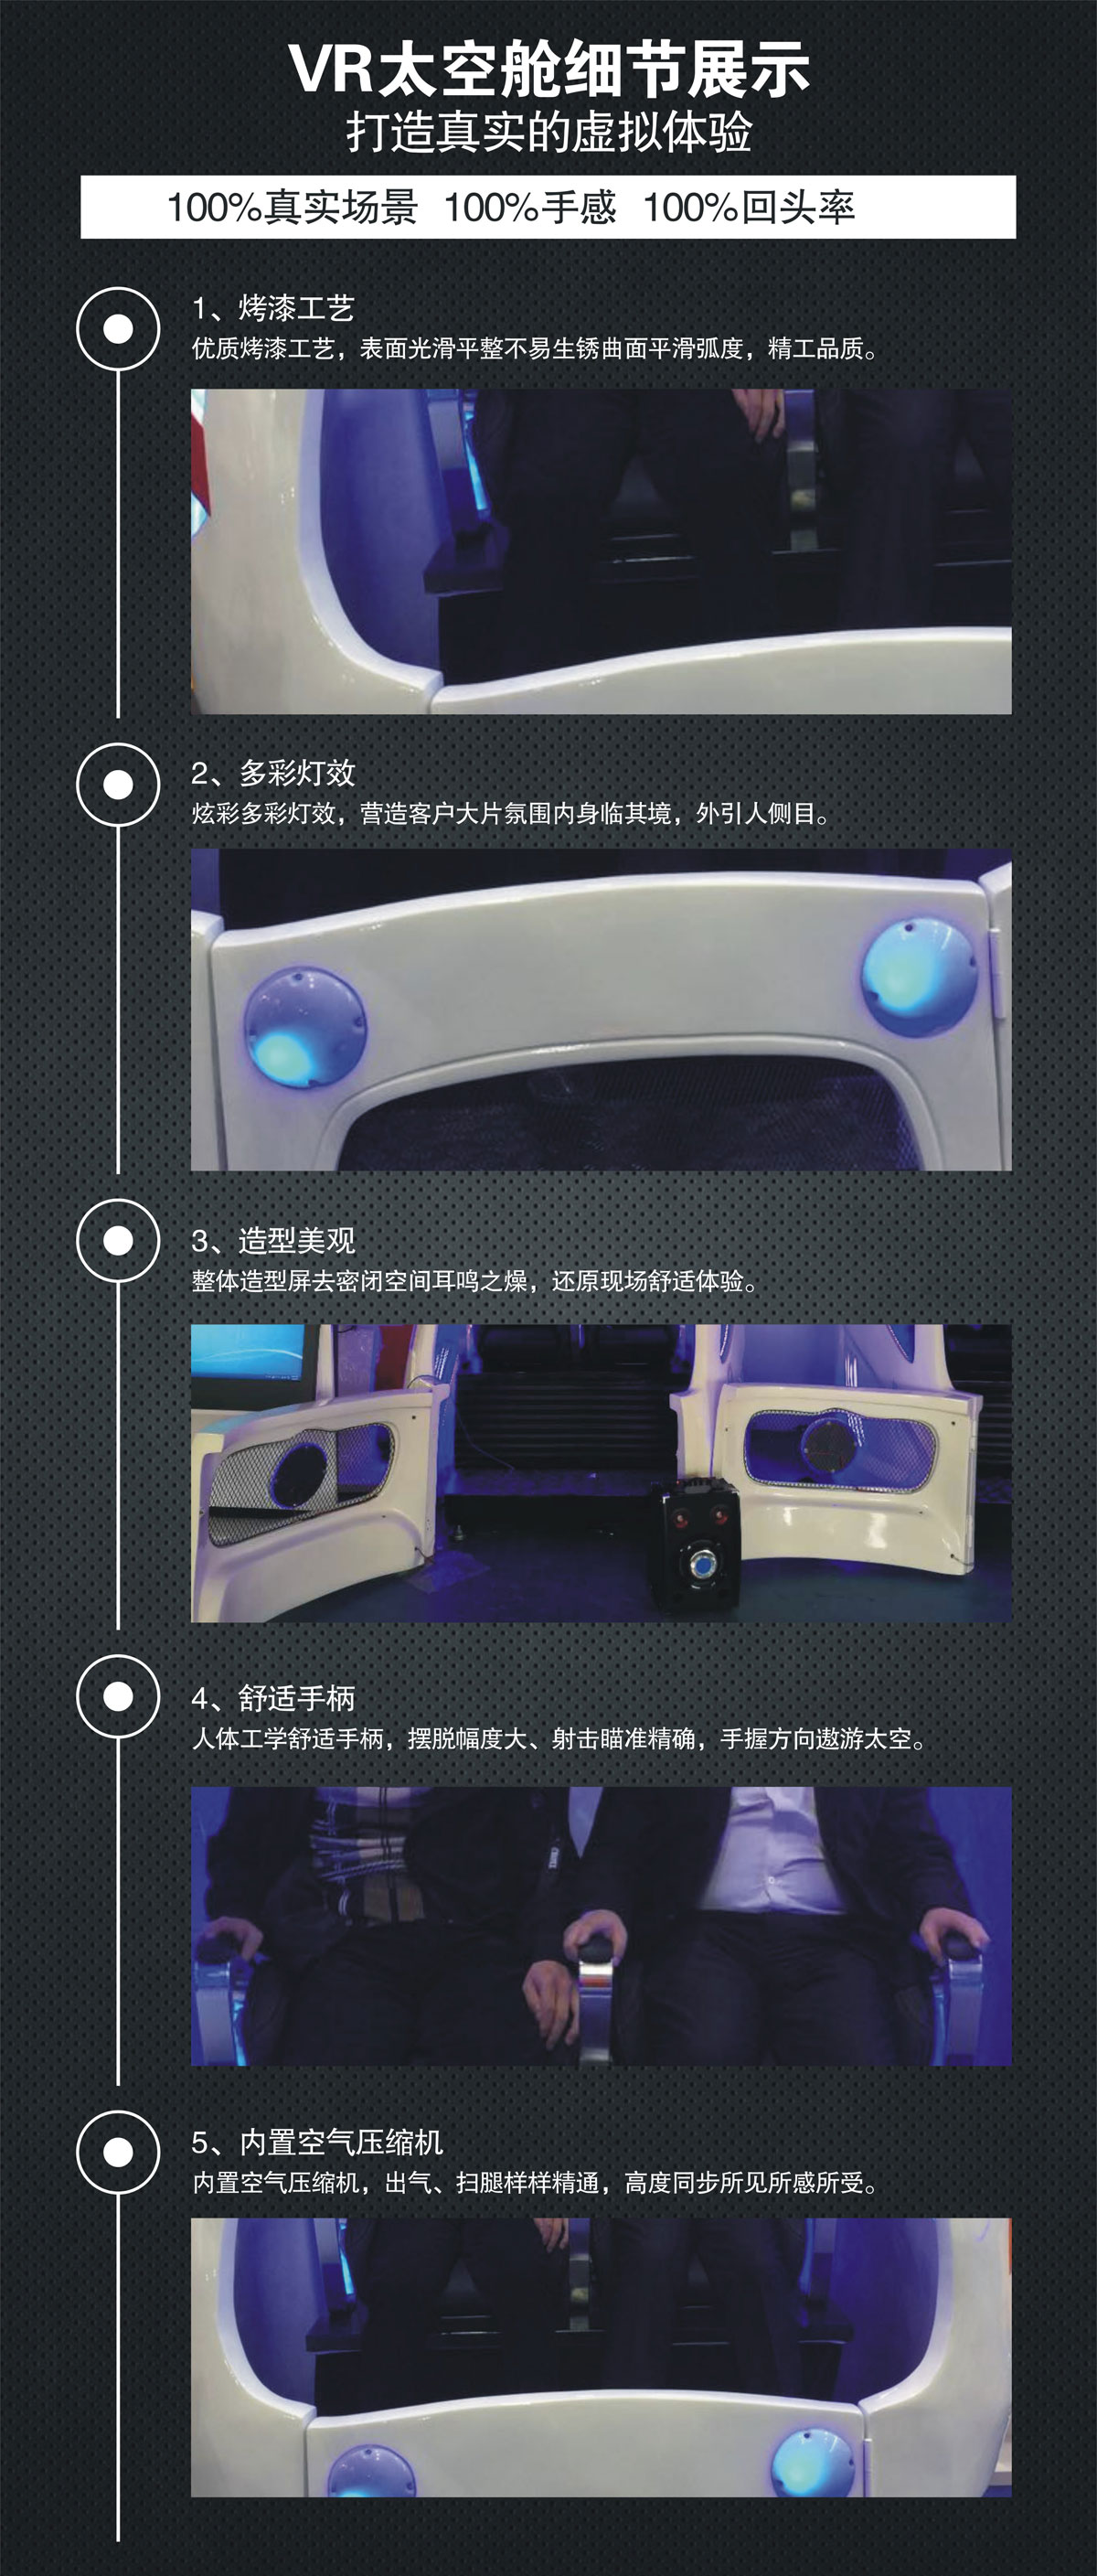 环幕影院VR太空舱细节展示.jpg